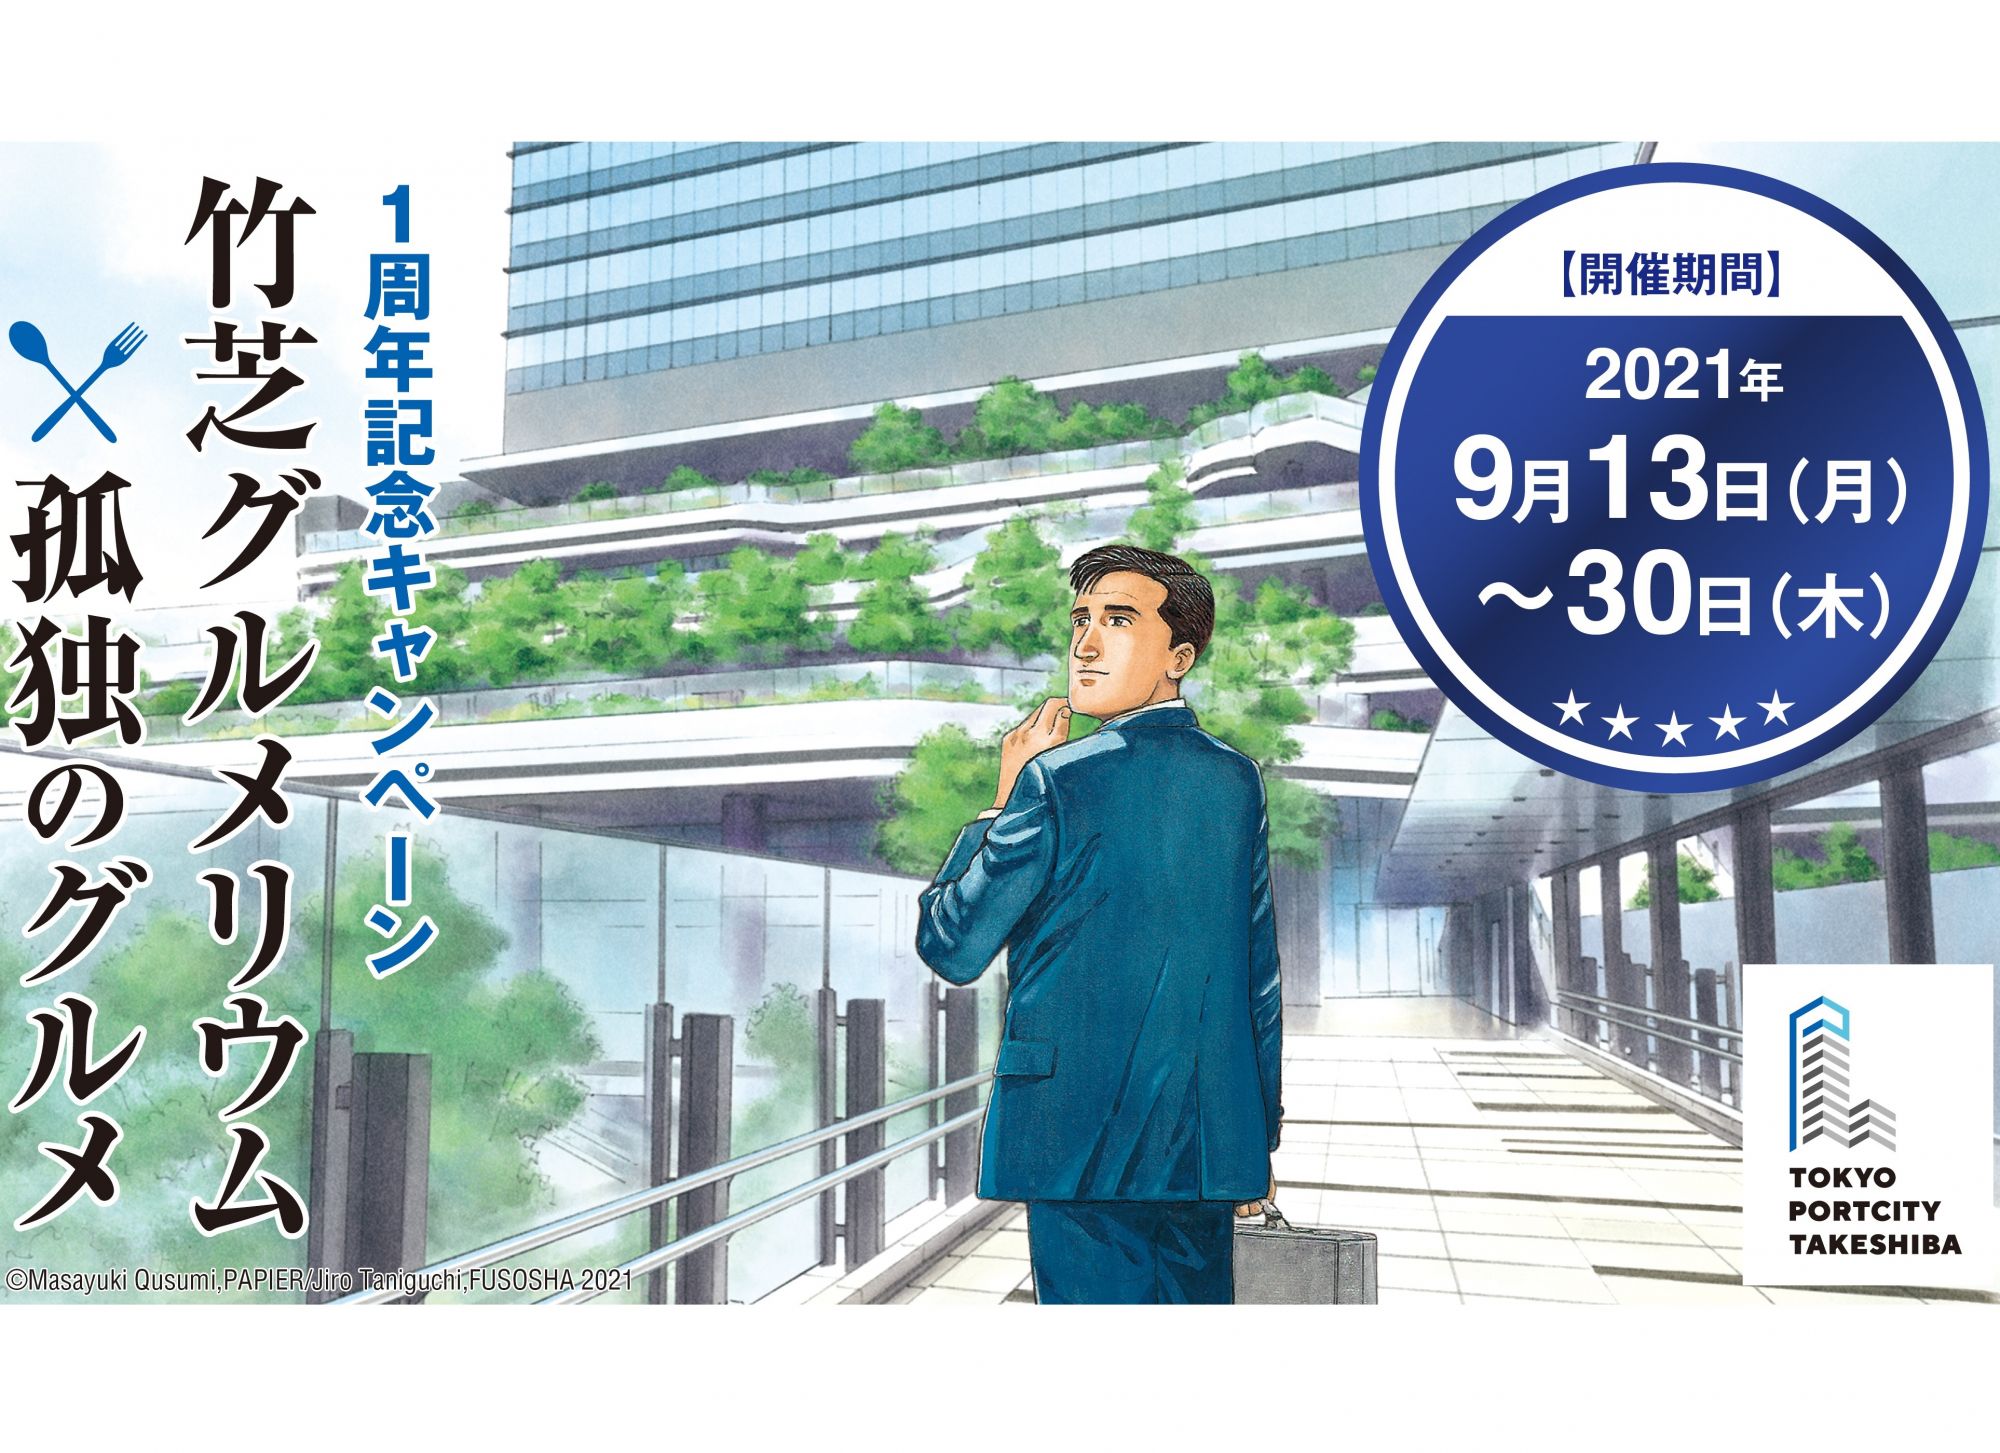 【終了】9月13日～30日の期間、東京ポートシティ竹芝で「竹芝グルメリウム×孤独のグルメ」を開催！